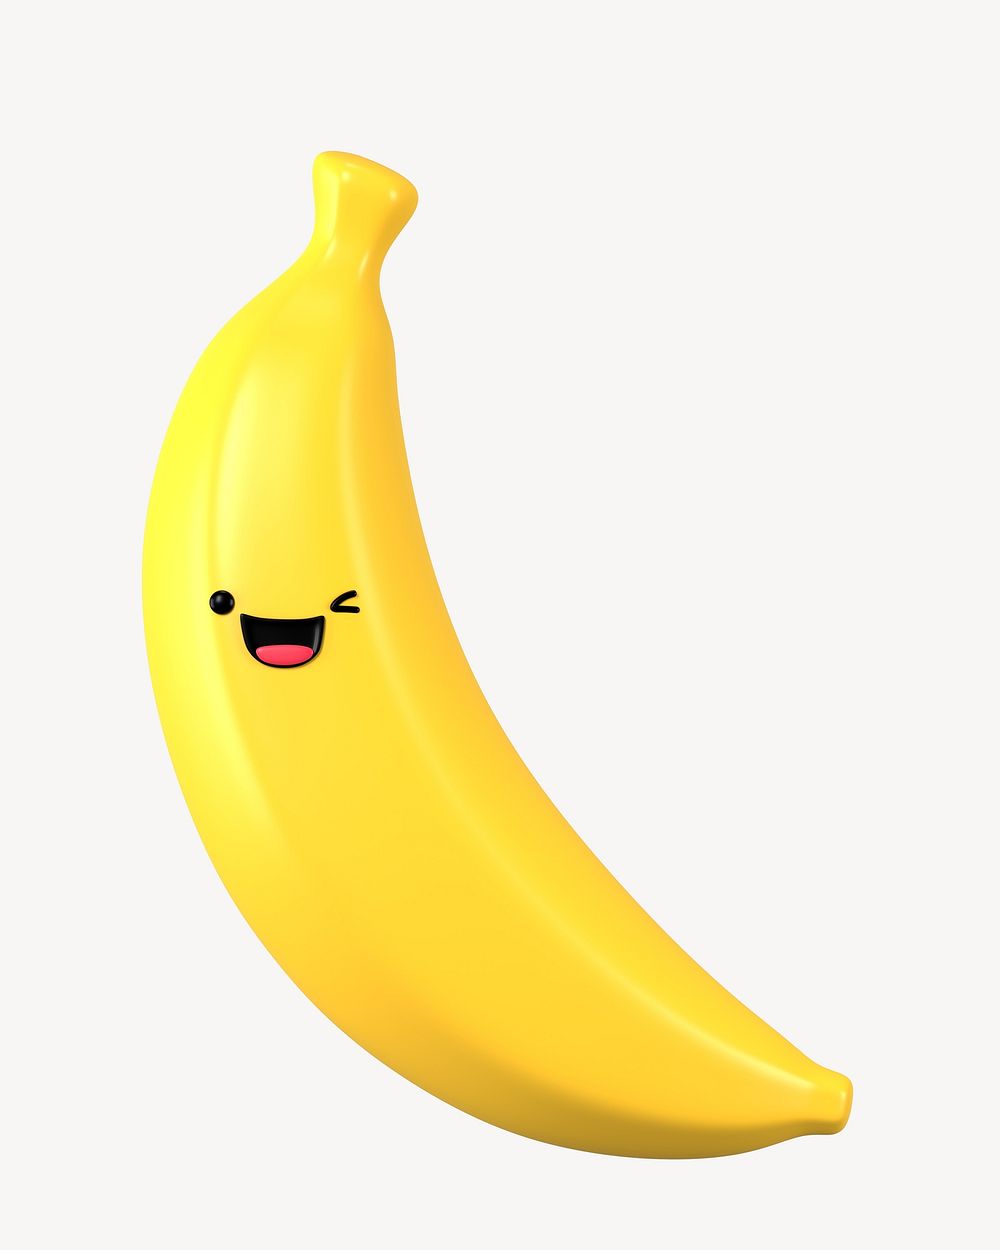 3D winking eyes banana, emoticon illustration